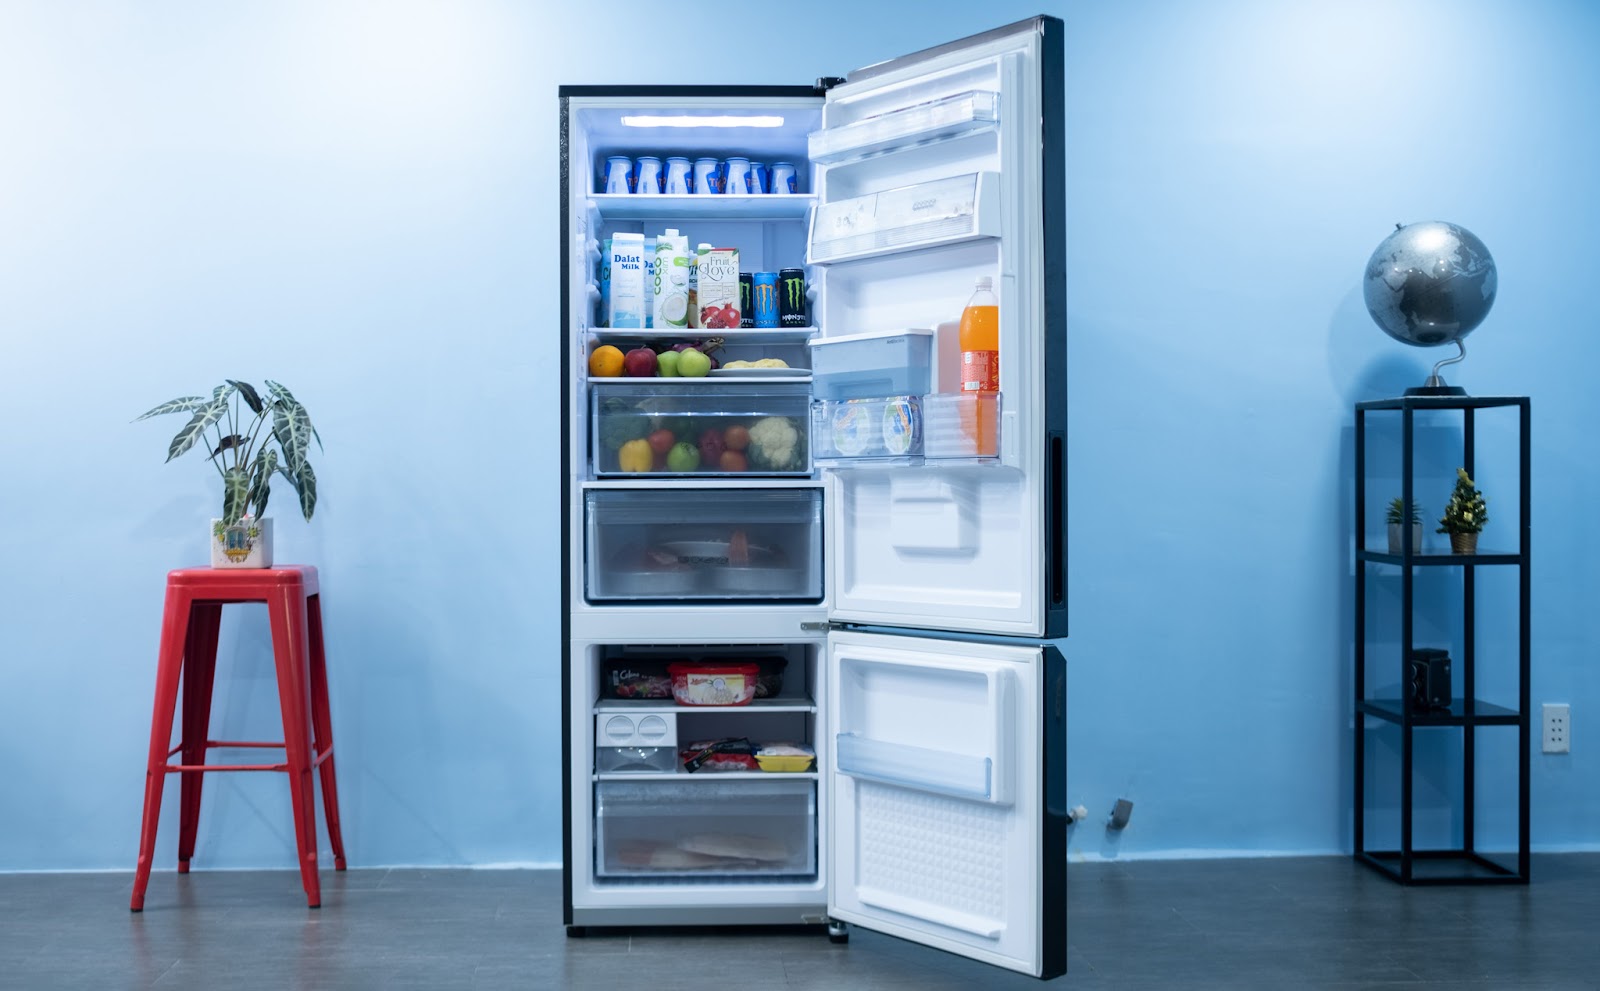 Thiết kế cực kỳ sang trọng và bắt mắt của tủ lạnh Panasonic